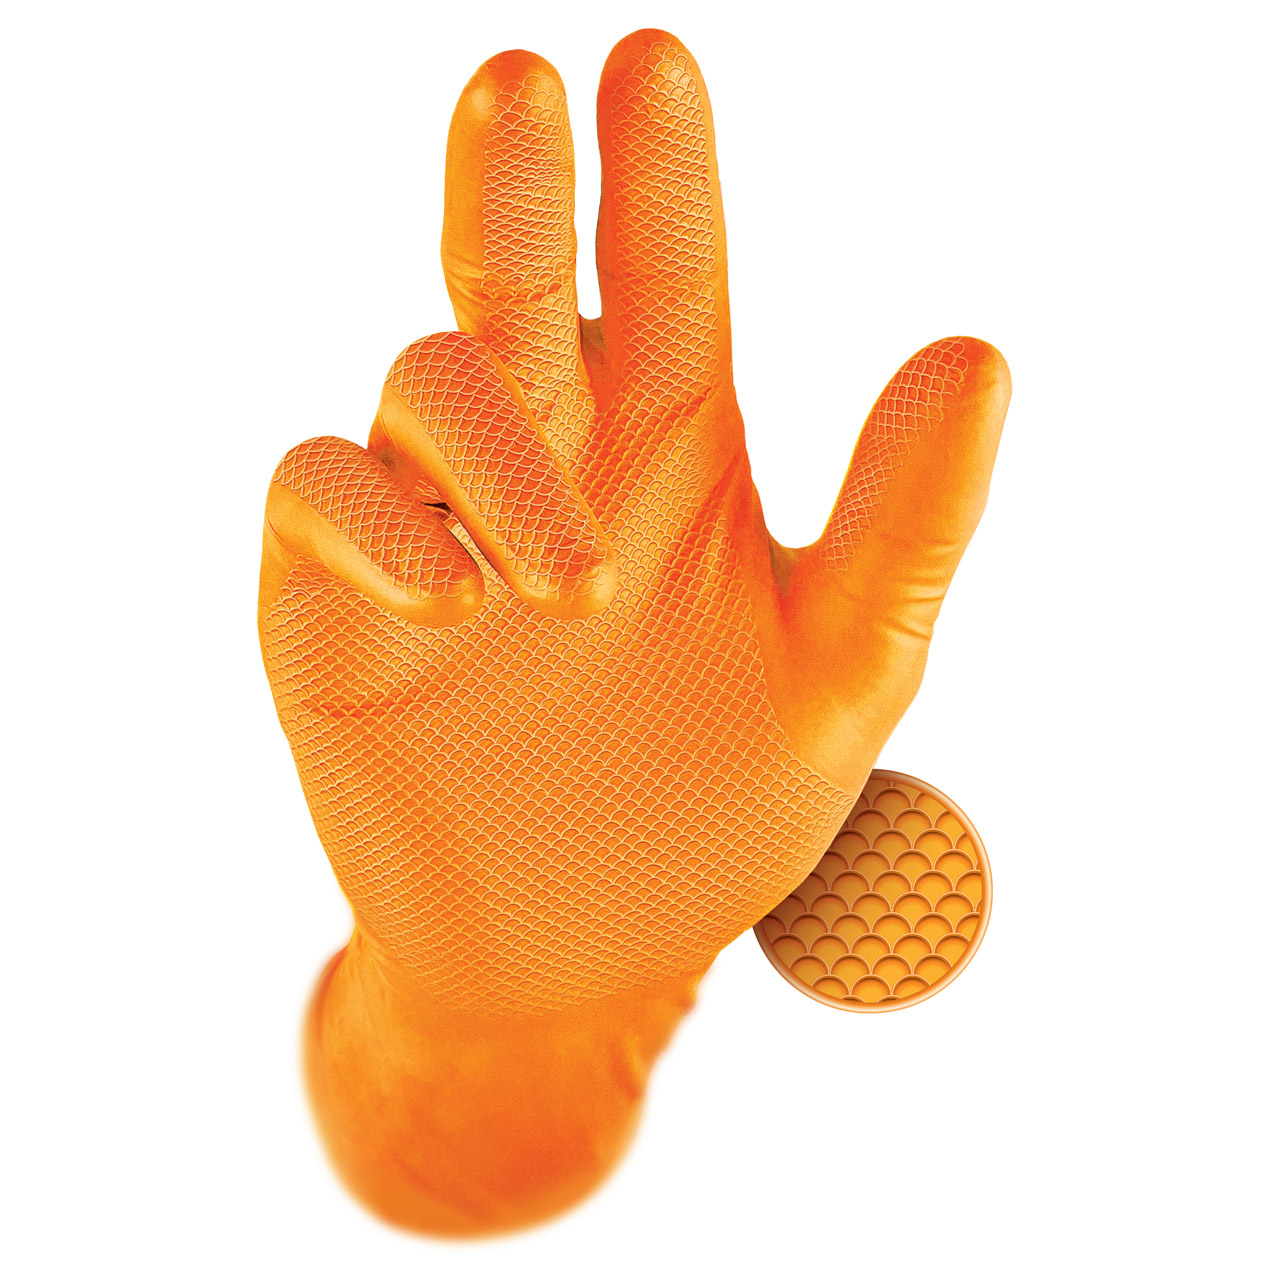 GRIPPAZ 246 Schutzhandschuhe NITRIL Handschuhe ORANGE Größe S (50 Stück)